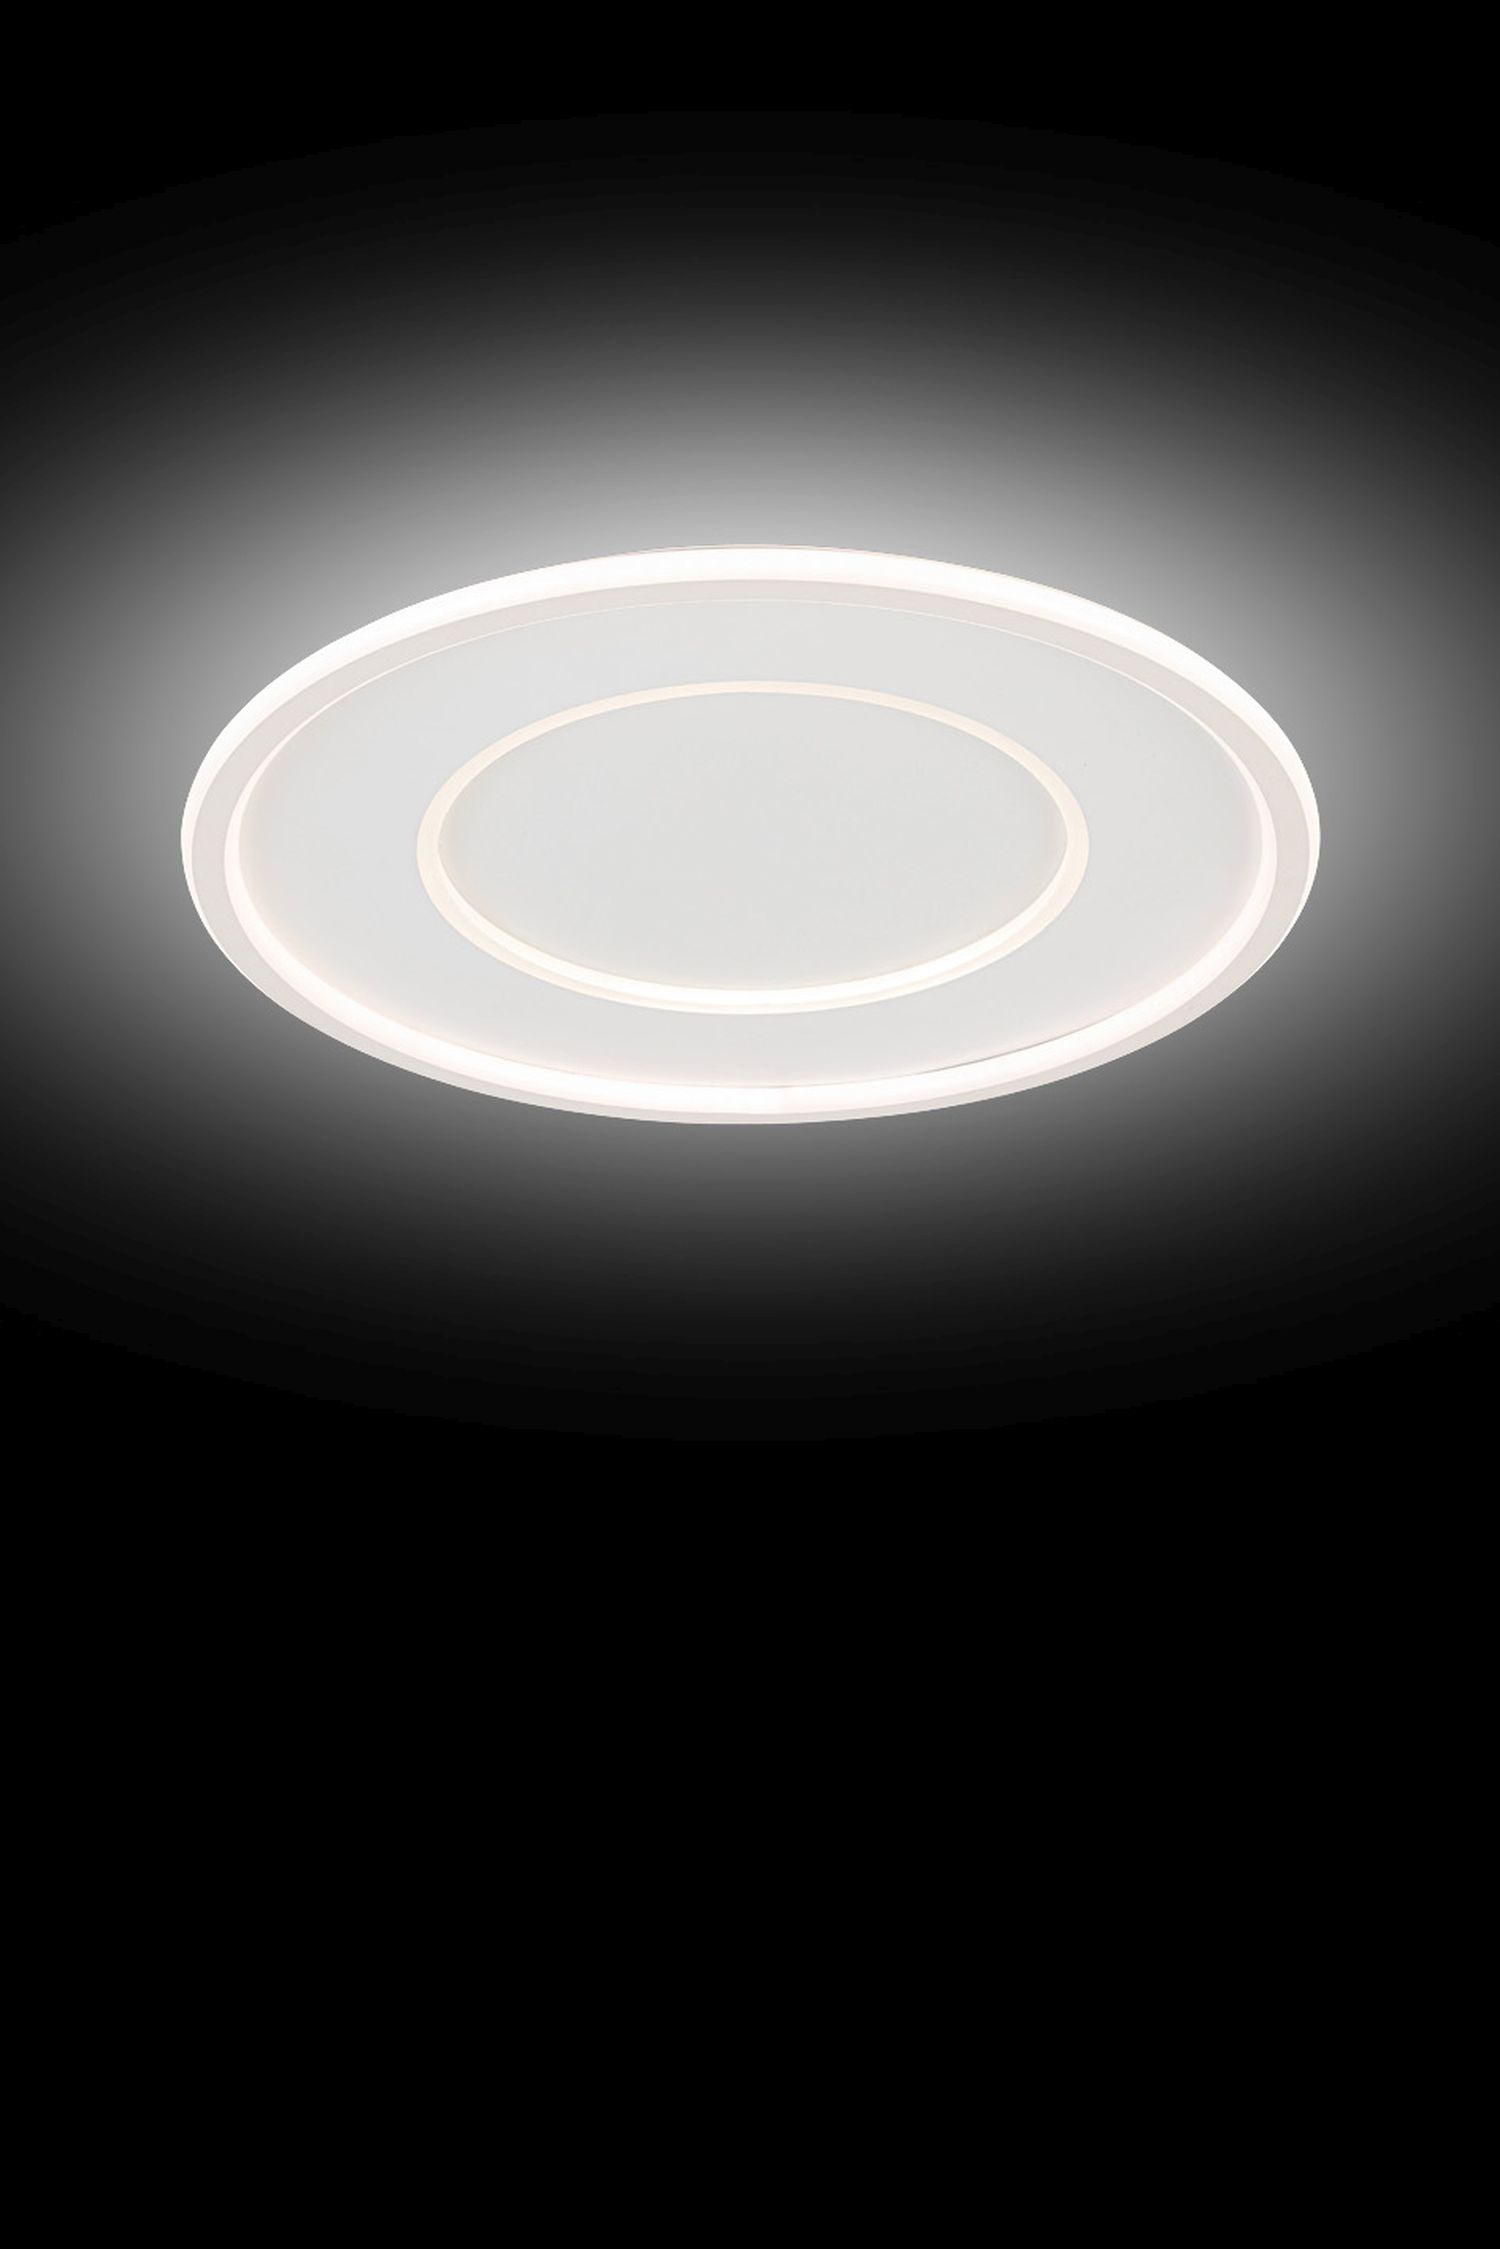 LED Deckenlampe rund Ø 42 cm Fernbedienung Farbwechsel Dimmer